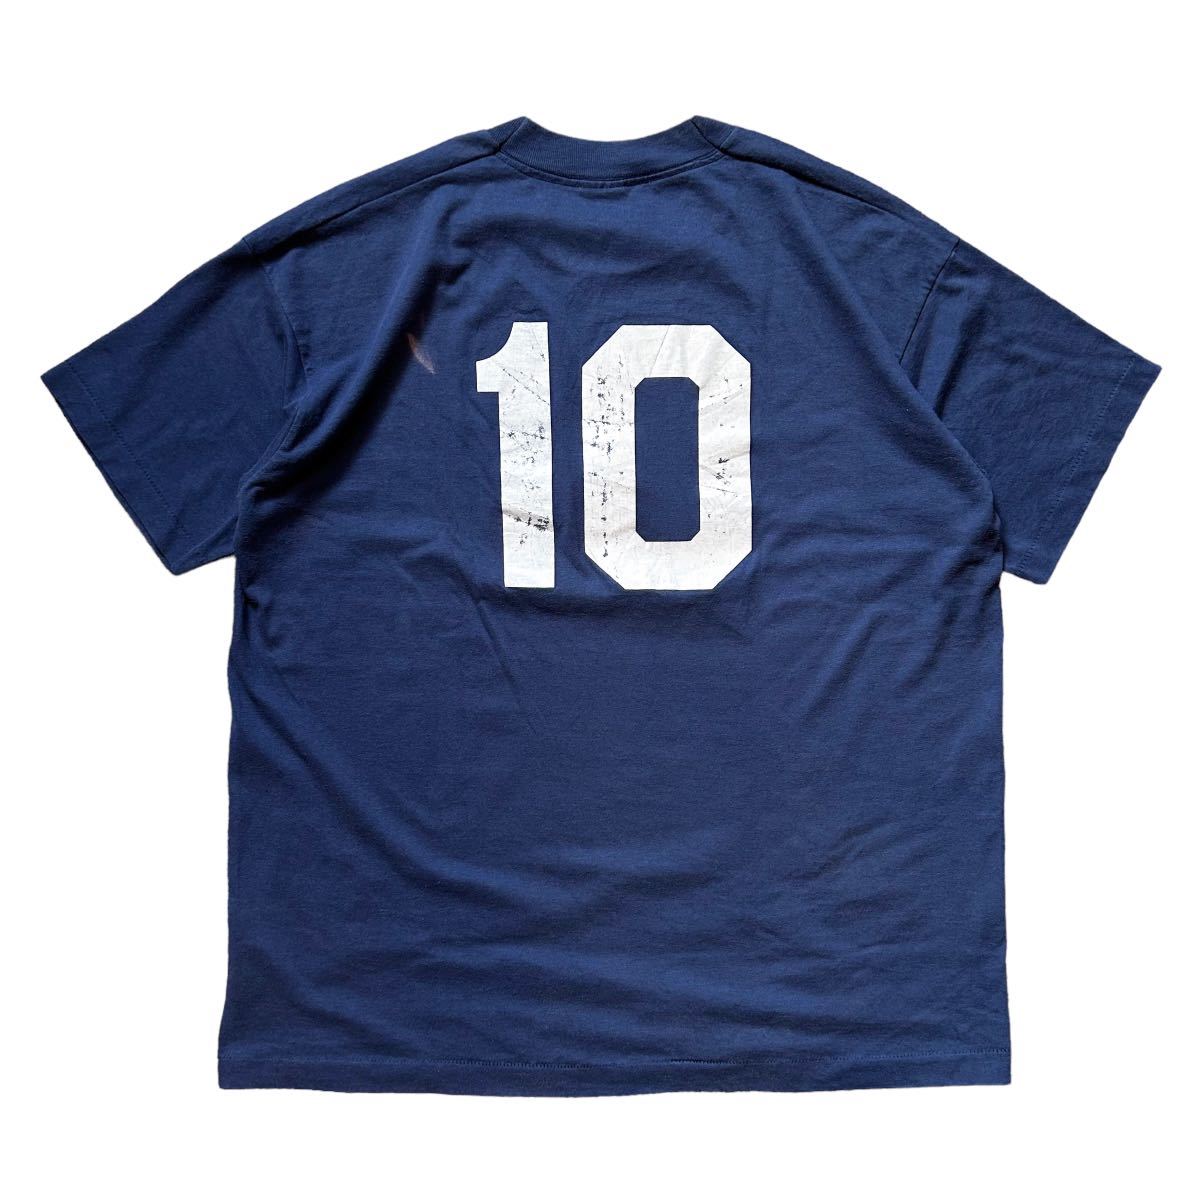 USA製 90’s フルーツオブザルーム ヴィンテージ Tシャツ ネイビー 紺 XLサイズ スポーツ バレー バスケット 野球 ボーリング 10 背番号_画像3